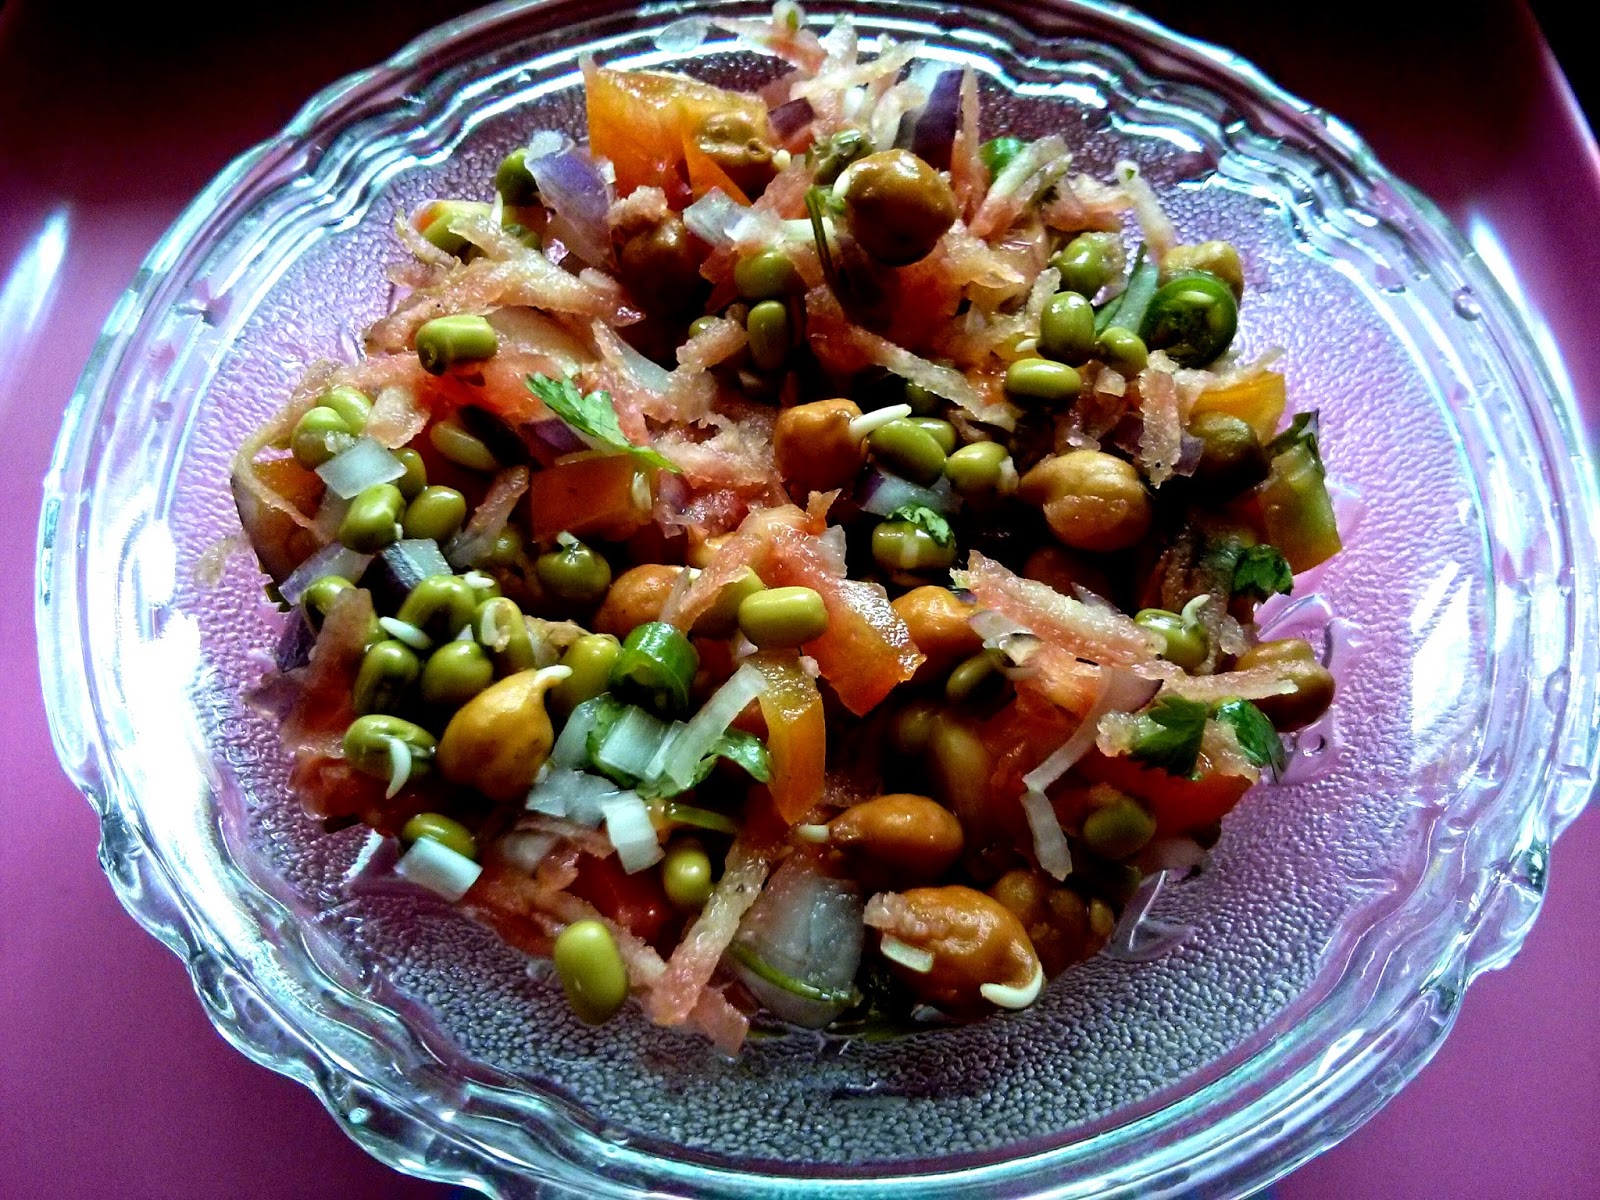 Healthy sprouts salad recipe